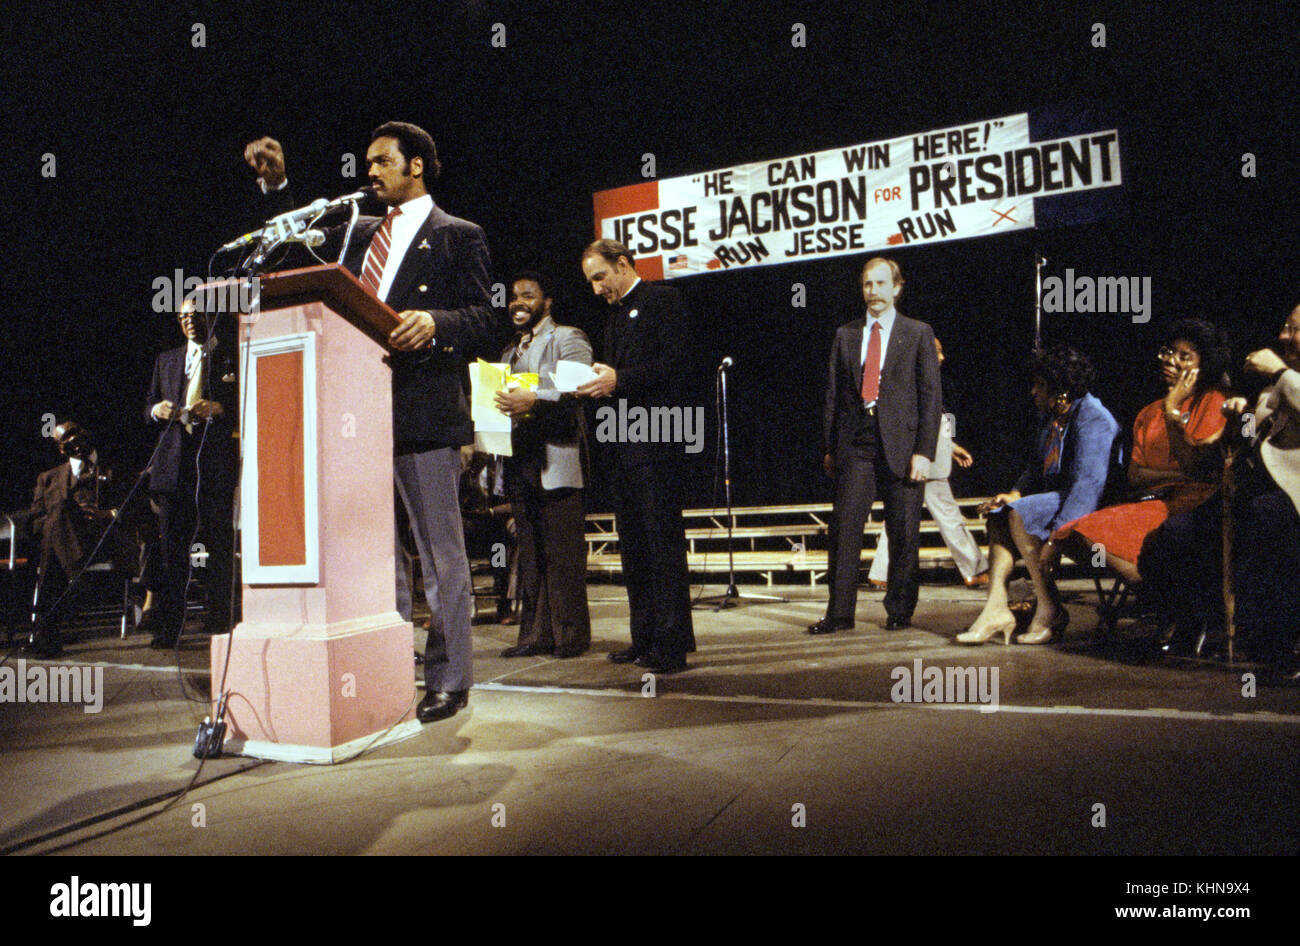 Jesse Jackson Kampagnen während sein Angebot im Jahr 1984 der Präsident der Vereinigten Staaten. Am 3. November 1983, Jackson verkündete seine Kampagne für den Präsidenten der Vereinigten Staaten bei der Wahl 1984 zum zweiten afrikanischen amerikanischen eine bundesweite Kampagne für Präsidenten zu montieren. in der Demokratischen Partei Primaries, Jackson, die von Experten als Randgruppe Kandidat mit wenig Chancen auf den Gewinn der Nominierung geschrieben worden, viele überrascht, als er den dritten Platz hinter Senator Gary Hart und ehemaligen Vizepräsidenten Walter Mondale nahm, der schließlich die Nominierung gewann. Stockfoto